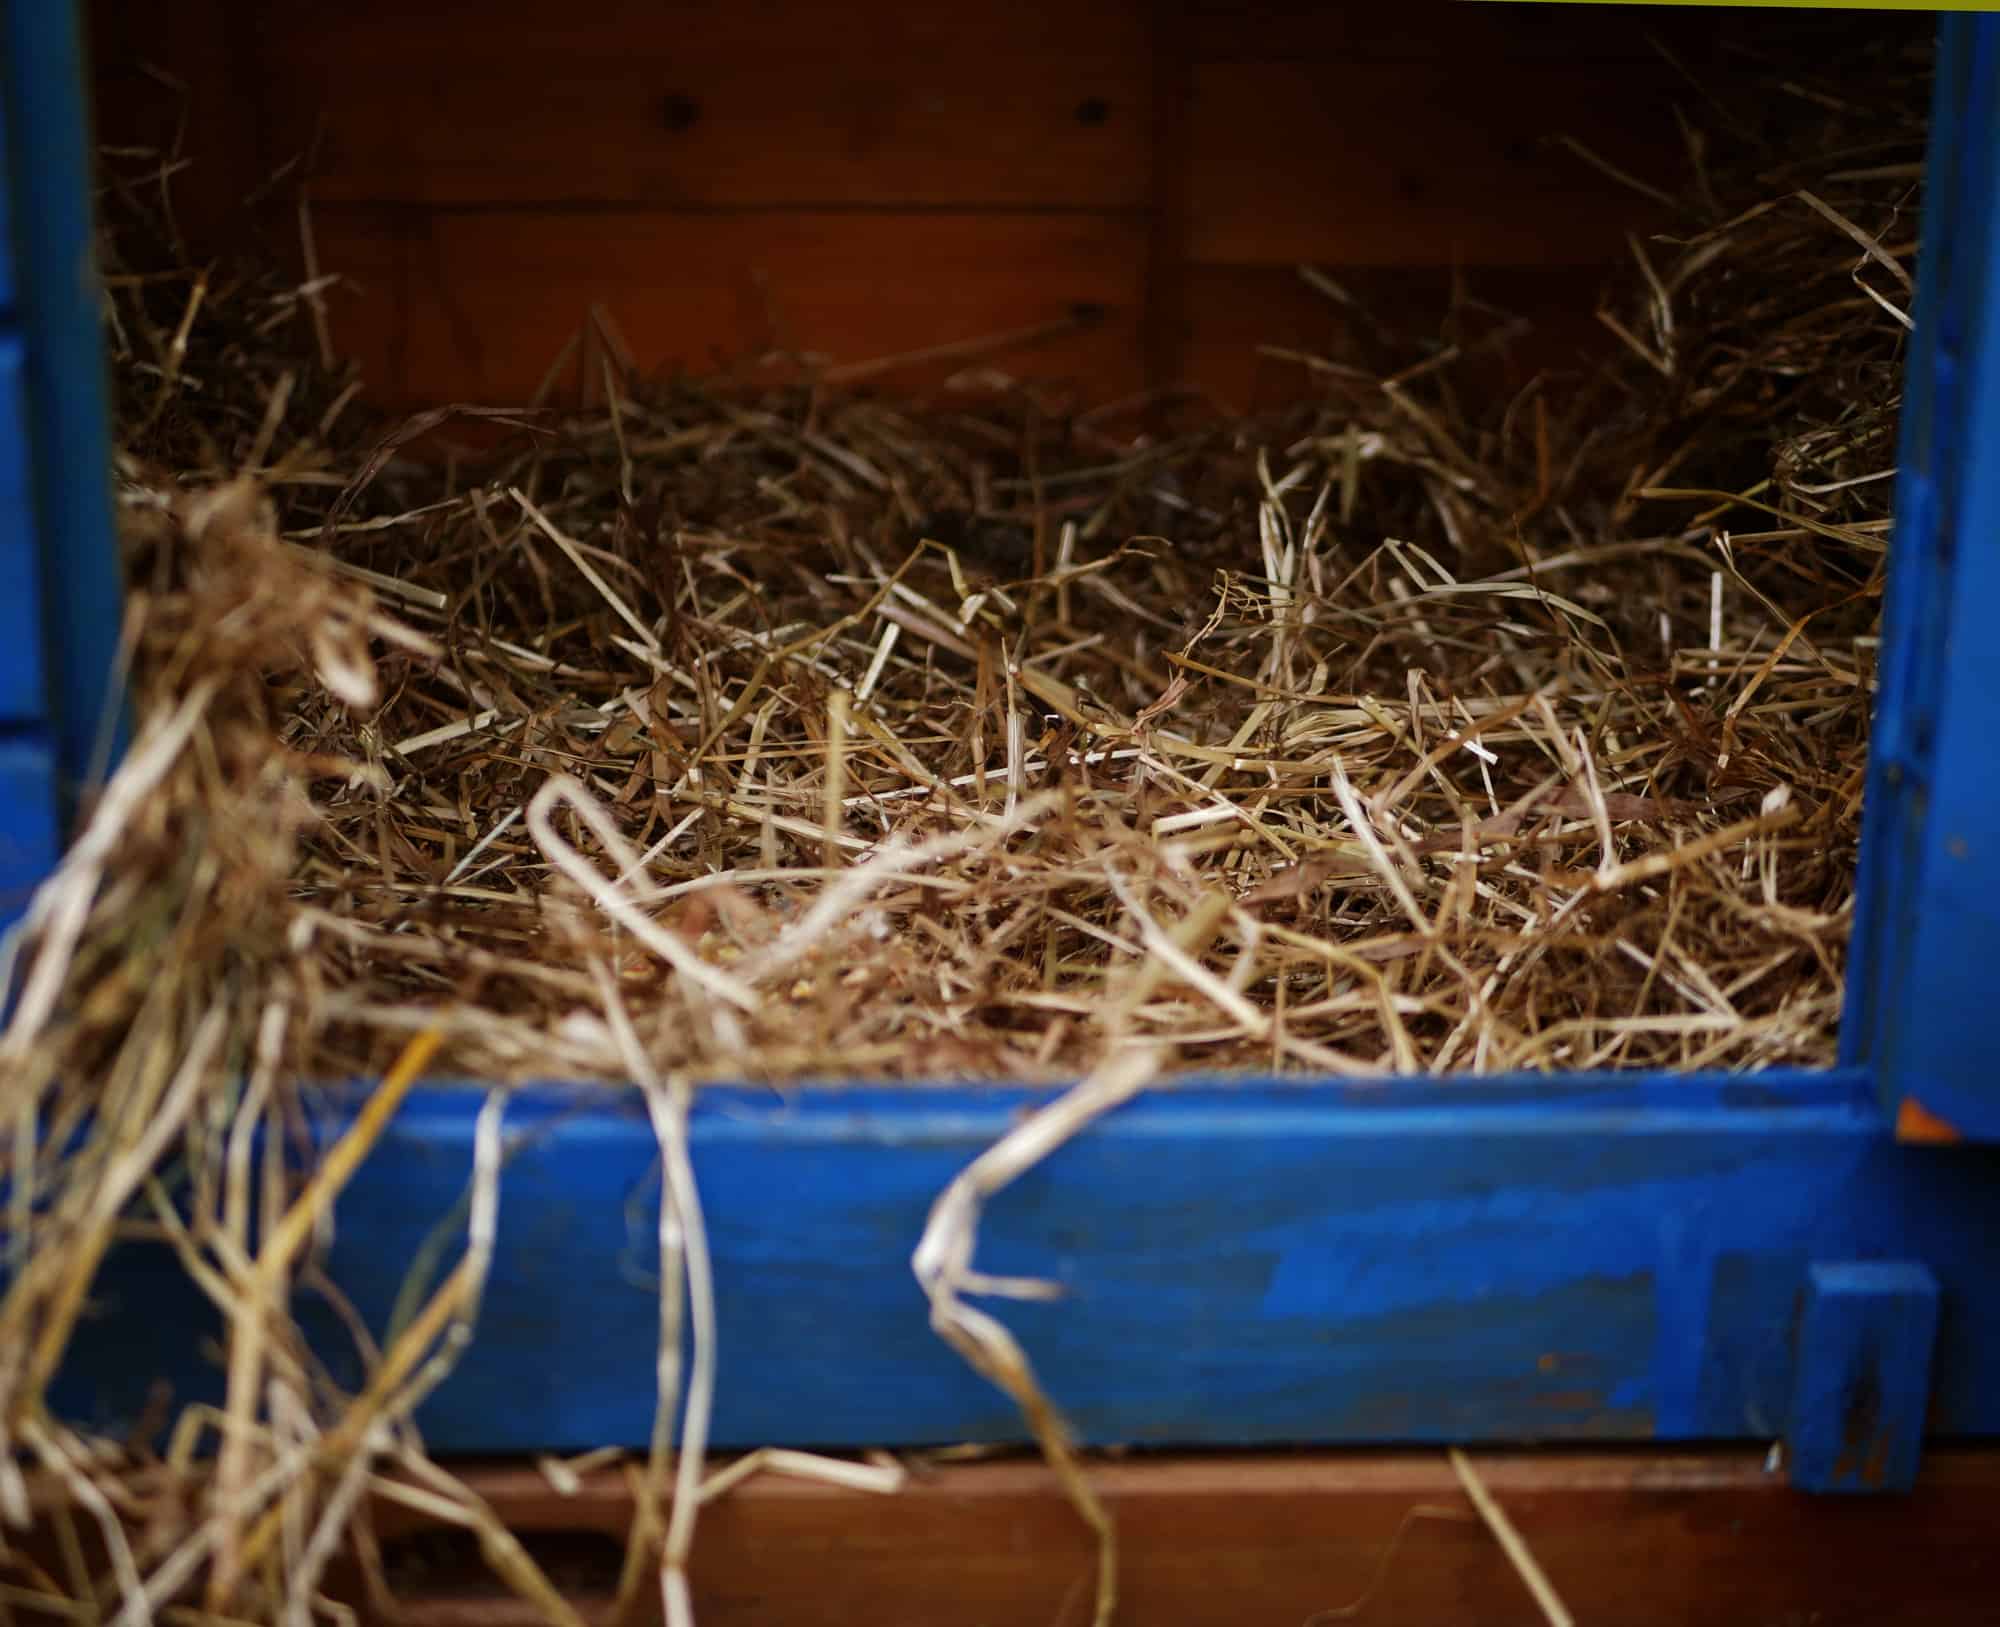 oat hay in a blue basket